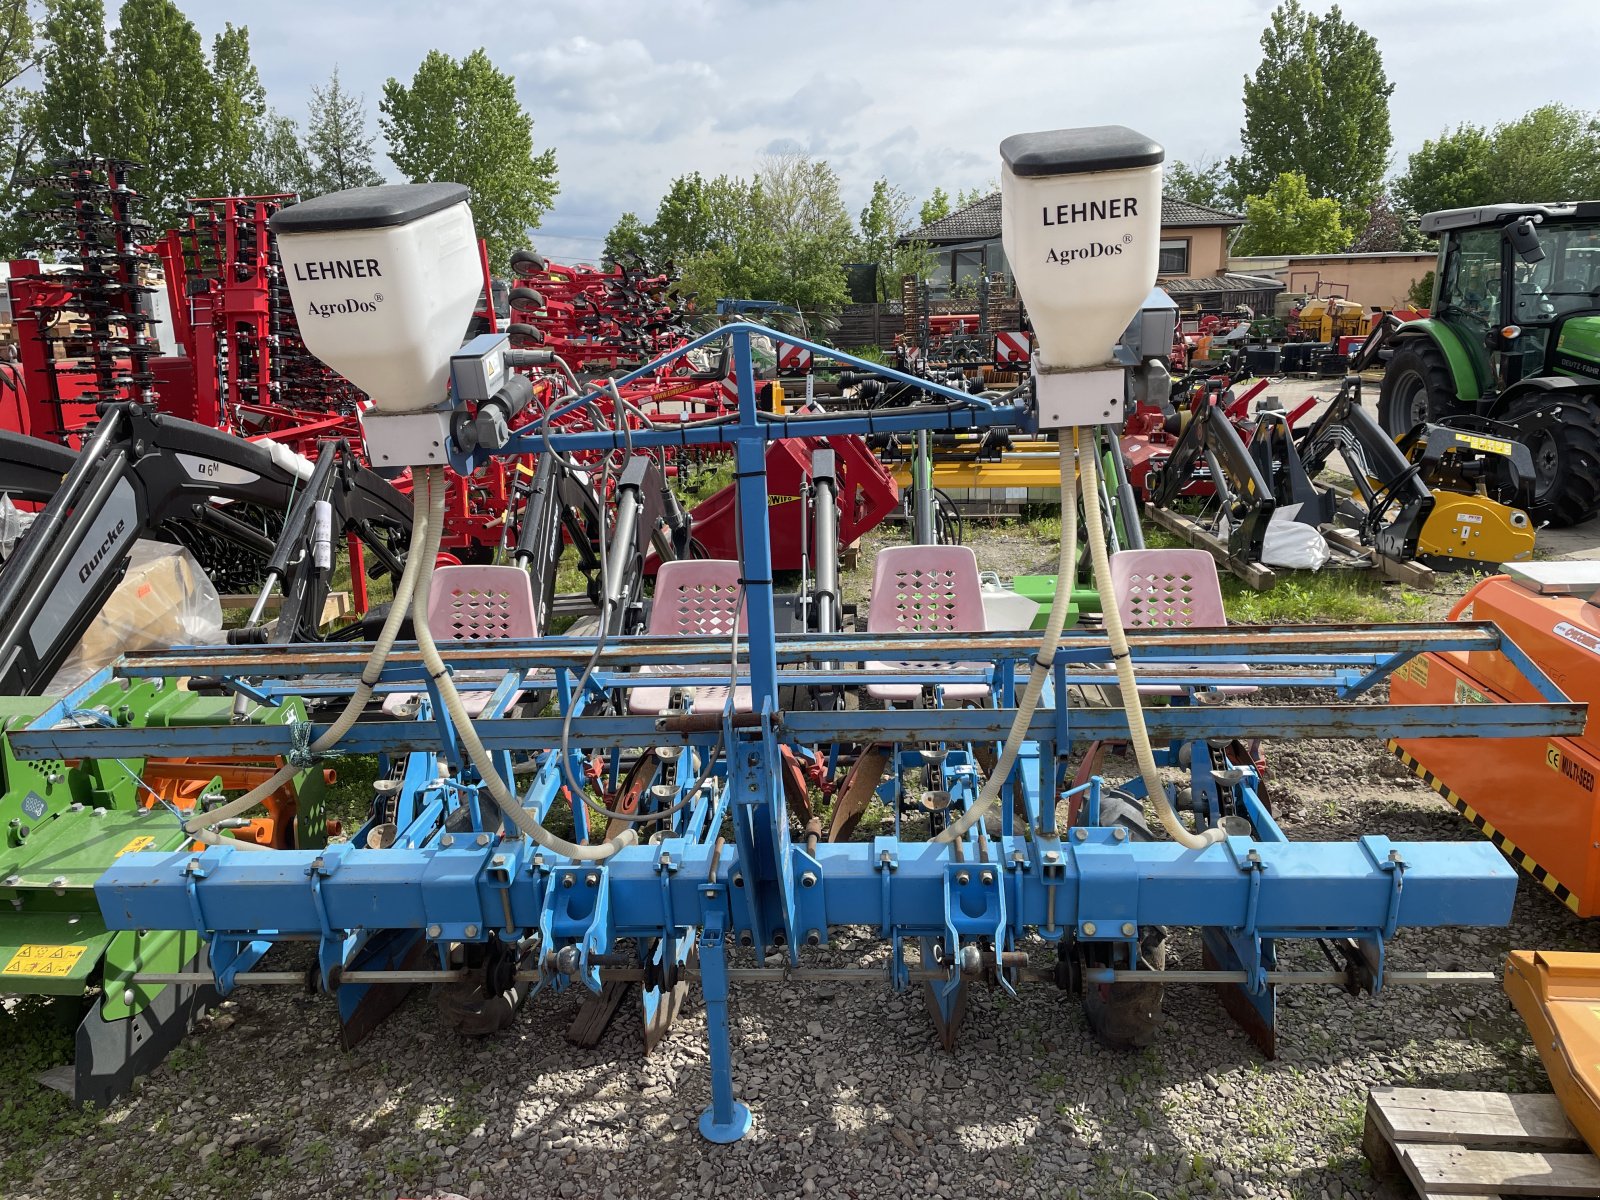 Kartoffellegemaschine des Typs Monosem SuperPrefer, Gebrauchtmaschine in Dannstadt-Schauernheim (Bild 1)